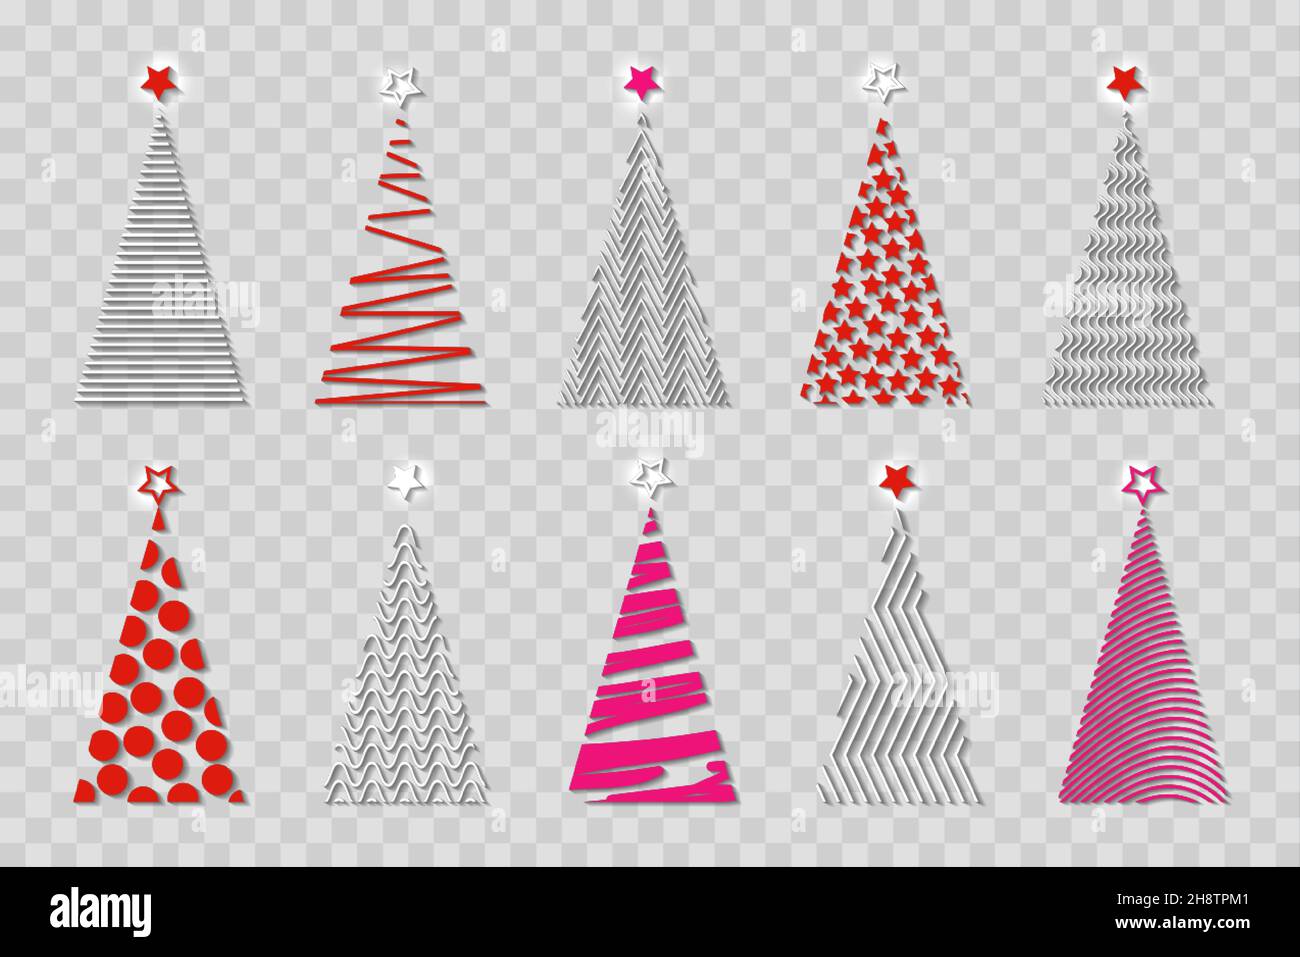 Ensemble de sapin de Noël stylisé à vecteur coloré, icône de logo festive, arbre géométrique en relief, isolé sur fond transparent Illustration de Vecteur